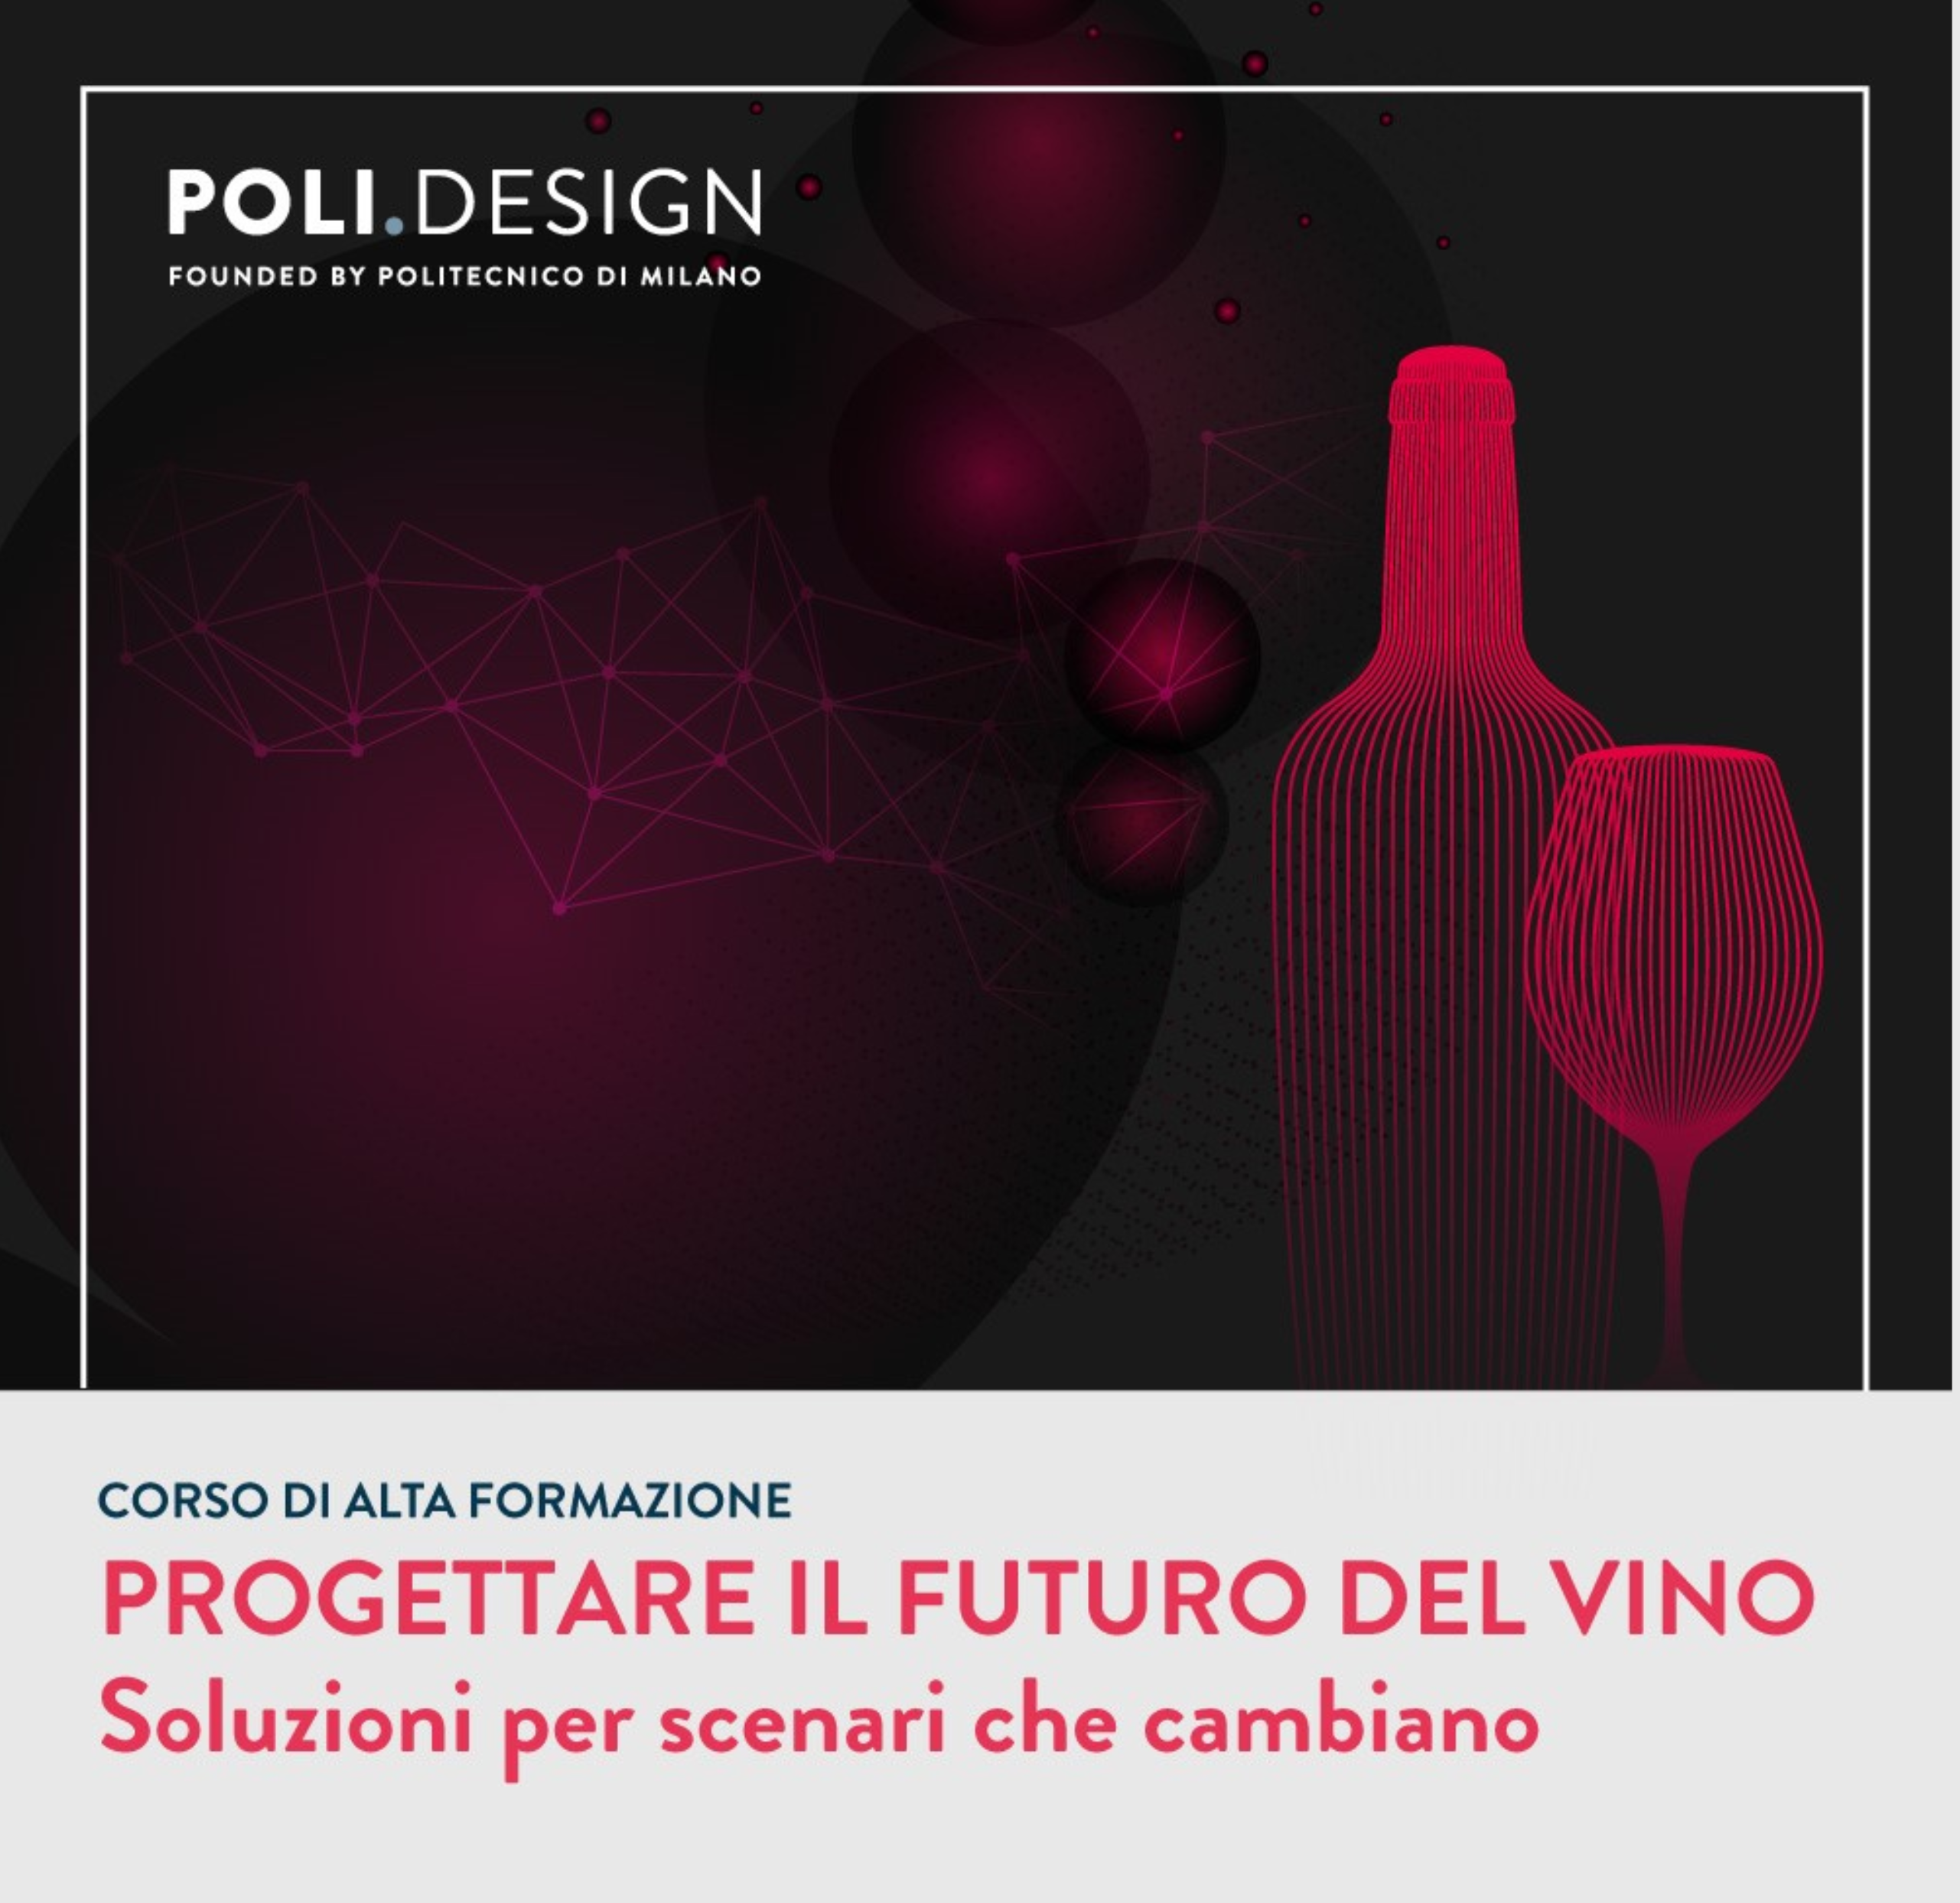 Progettare il futuro del vino: Silvia Baratta direttore tecnico del nuovo corso del POLI.design di Milano